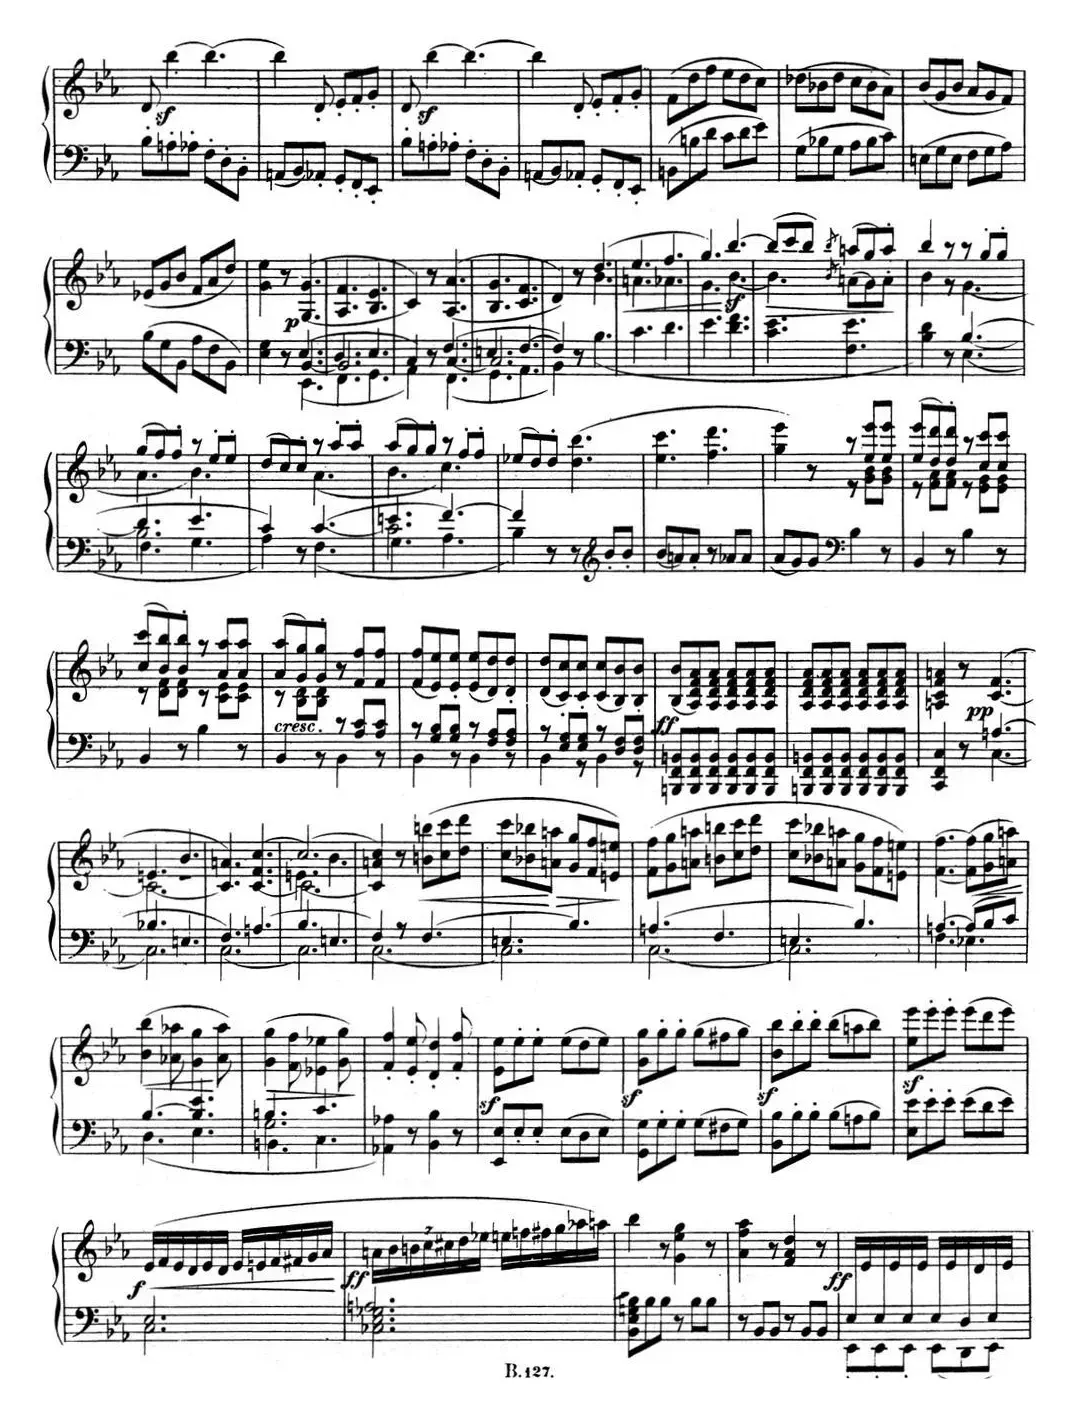 贝多芬钢琴奏鸣曲04 大调奏鸣曲 降E大调 Op.7 E-flat major